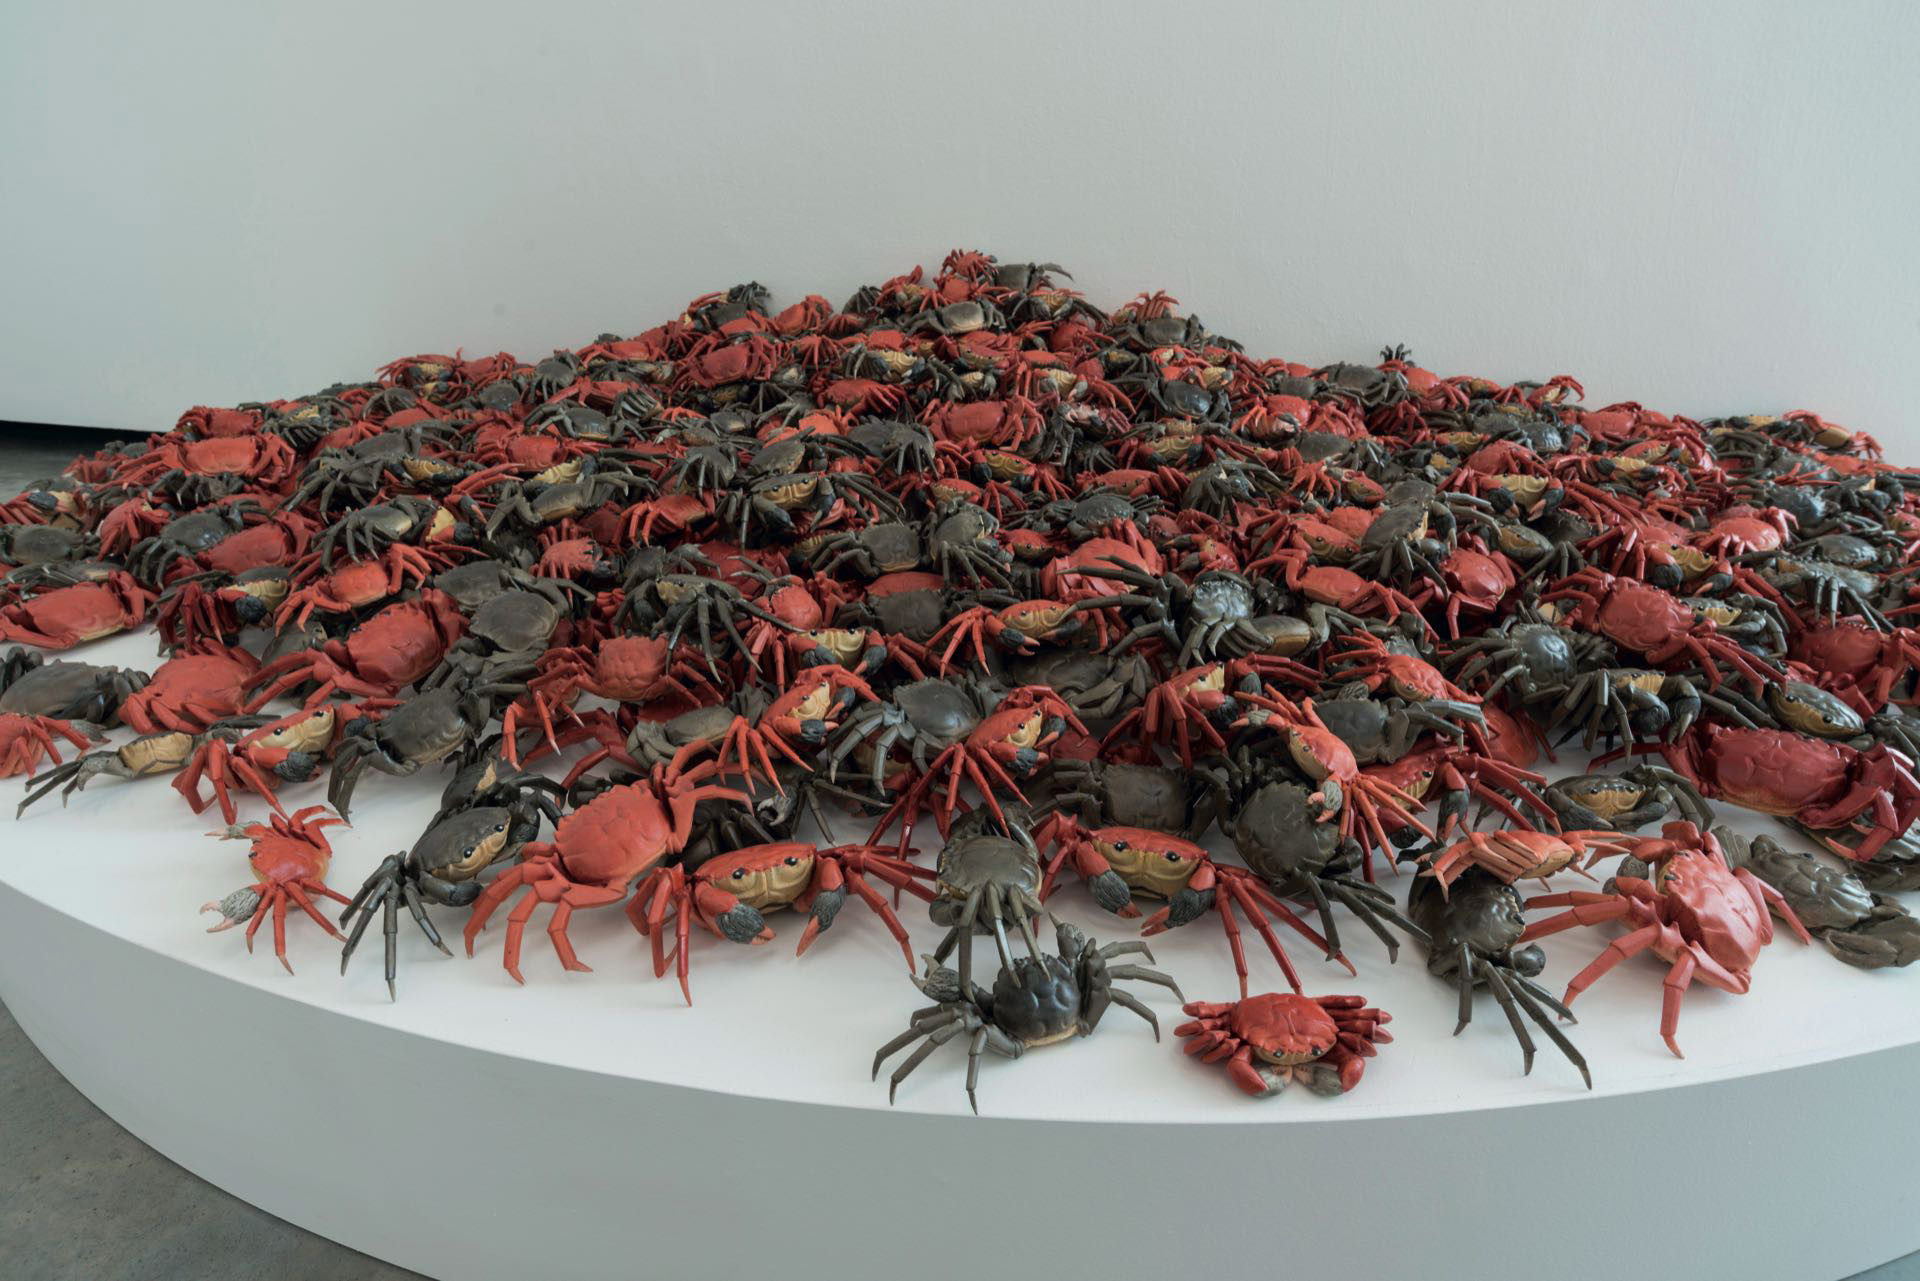 Los cangrejos de porcelana (he xie sinónimo de armonía en chino) alude a la censura contra el artista.